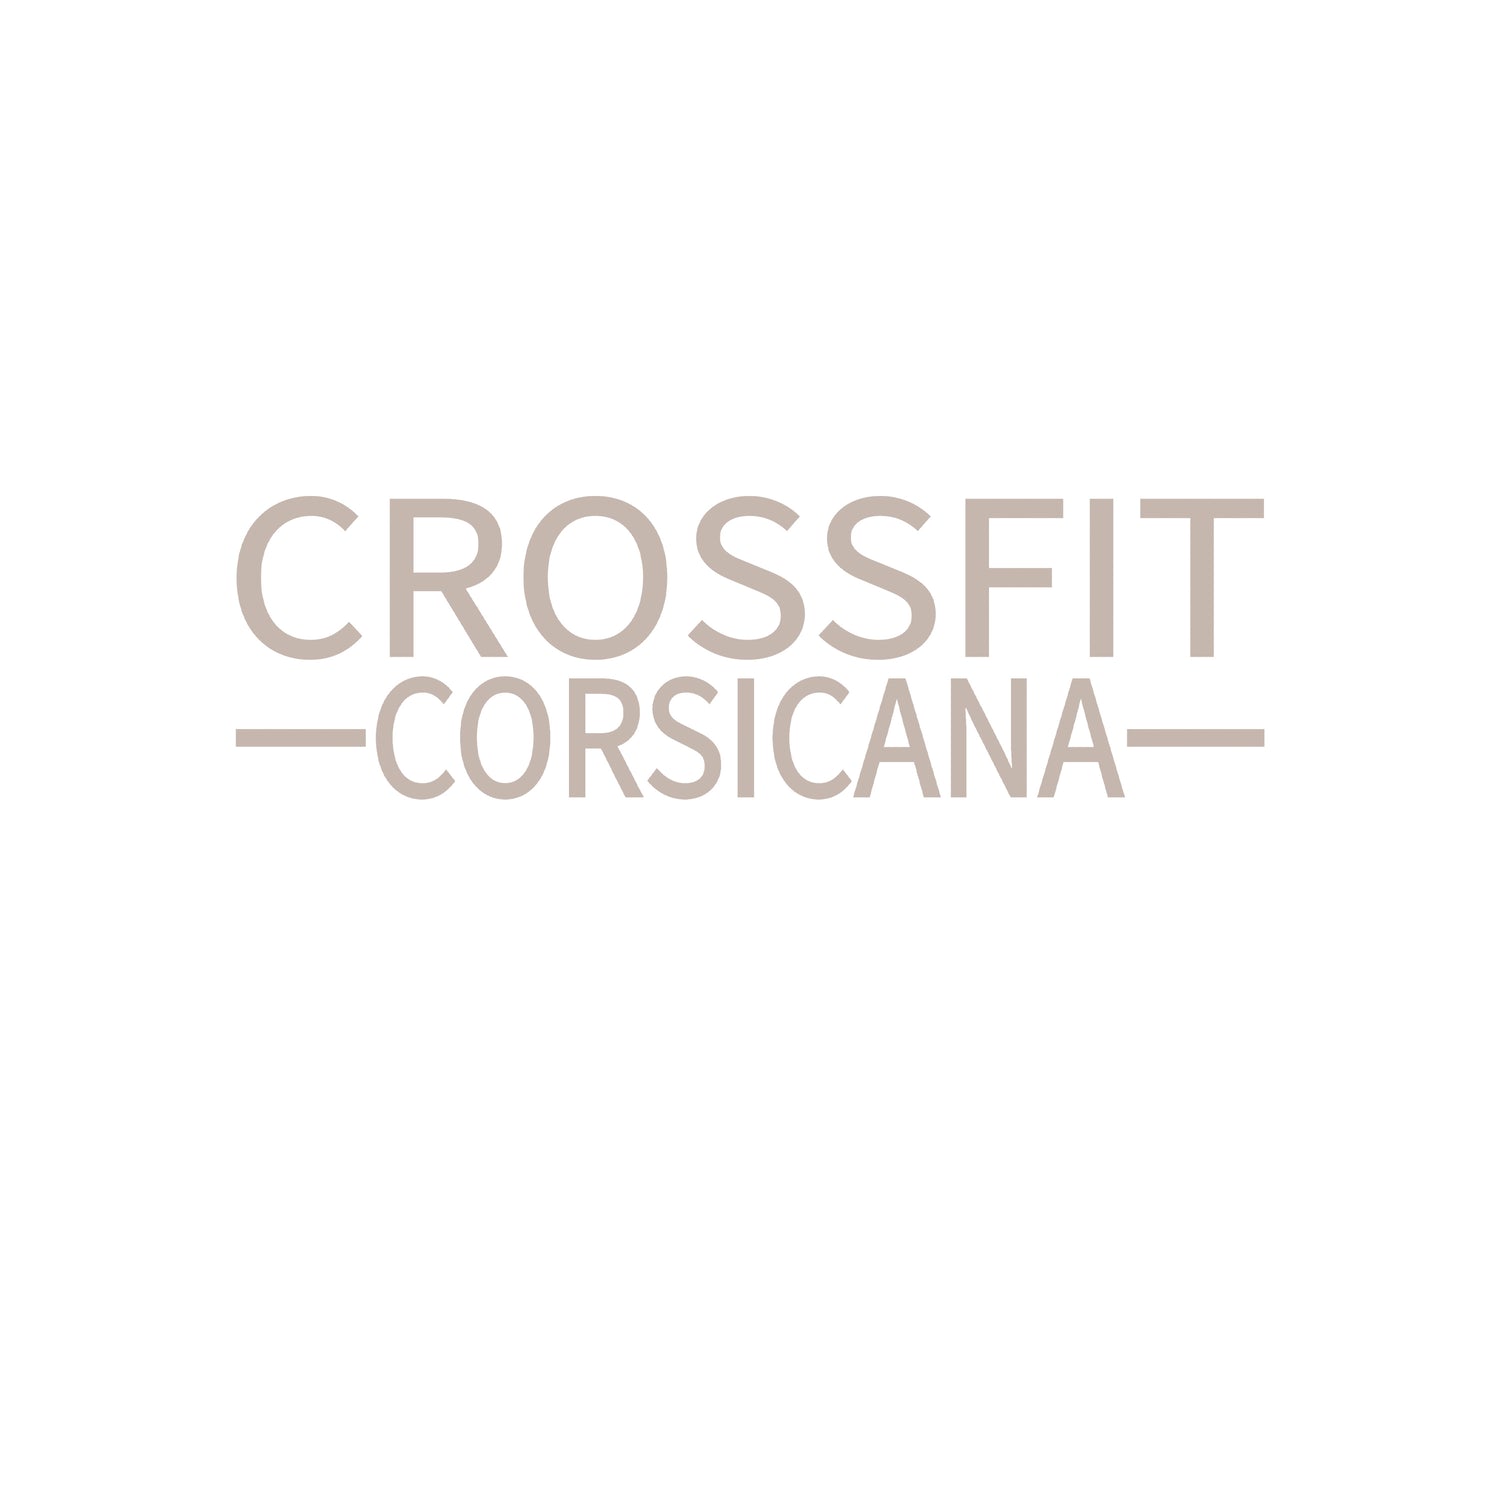 Crossfit Corsicana